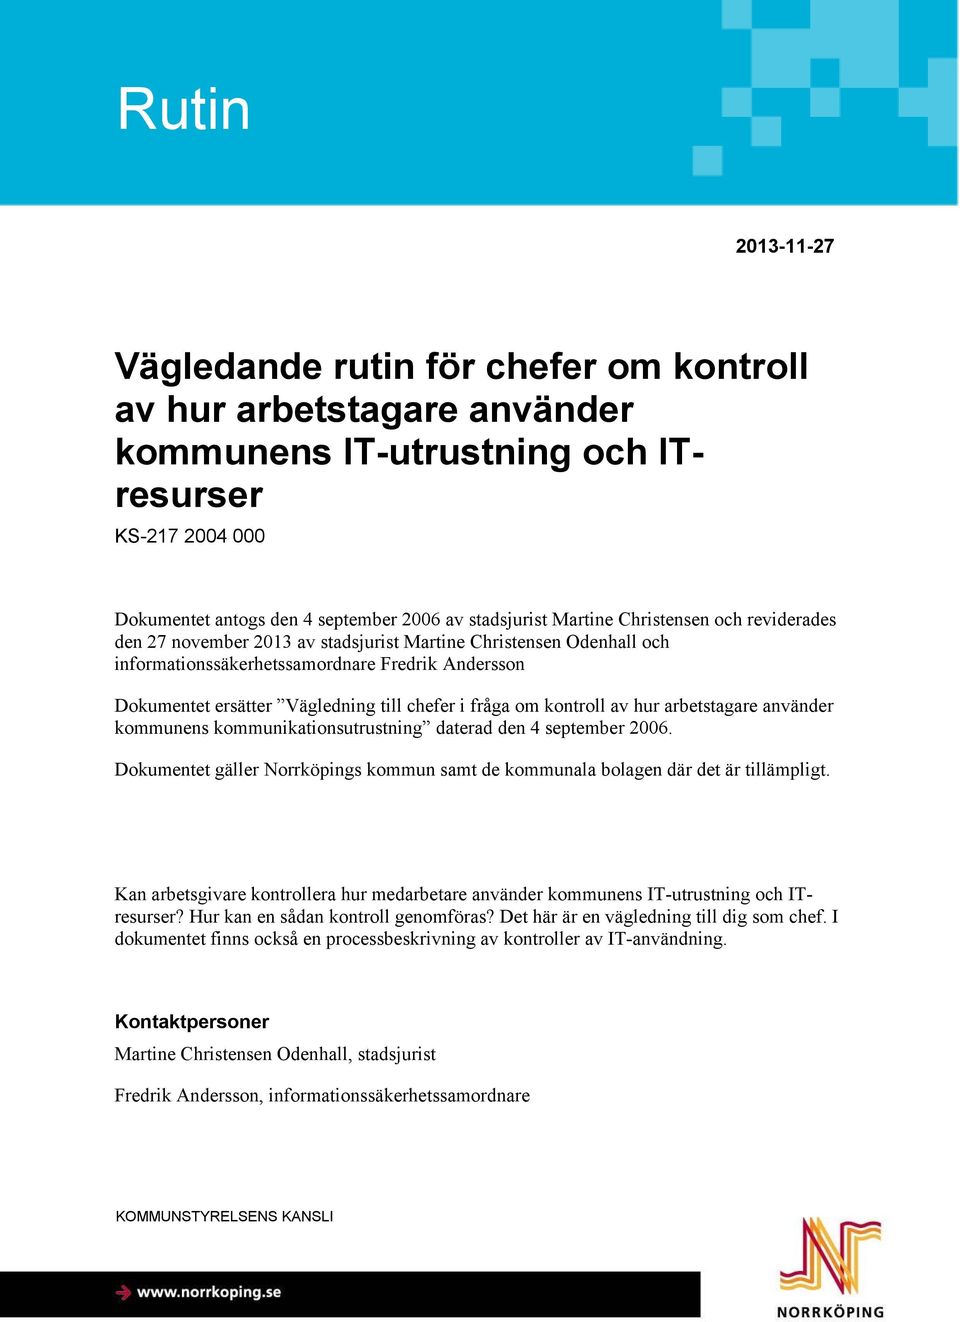 fråga om kontroll av hur arbetstagare använder kommunens kommunikationsutrustning daterad den 4 september 2006. Dokumentet gäller Norrköpings kommun samt de kommunala bolagen där det är tillämpligt.